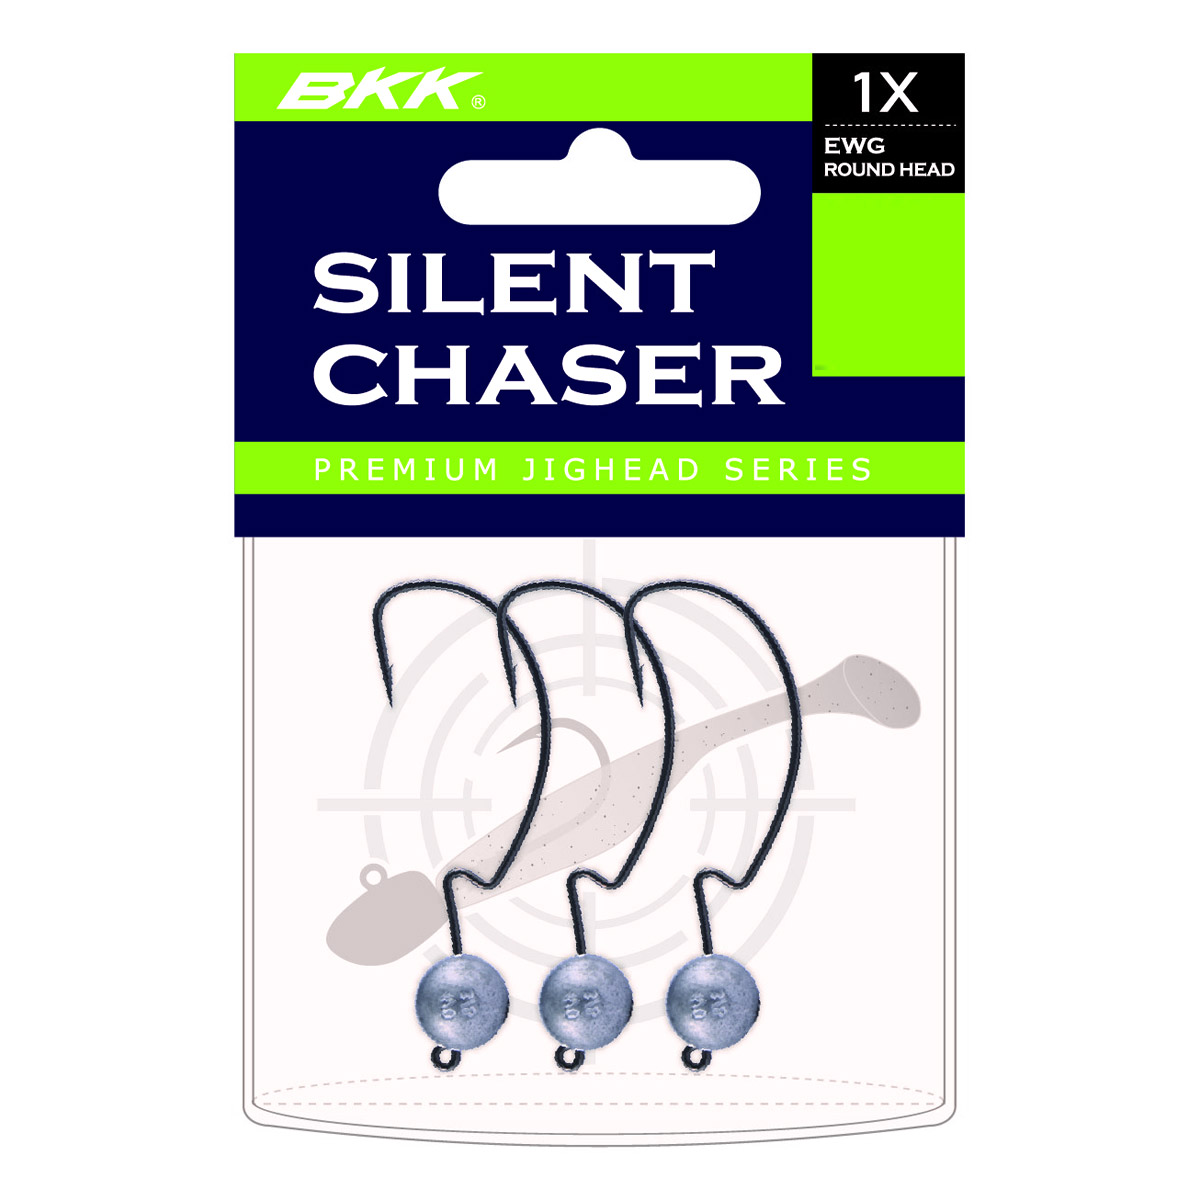 BKK Silent Chaser EWG 1X Round Head Size 1/0